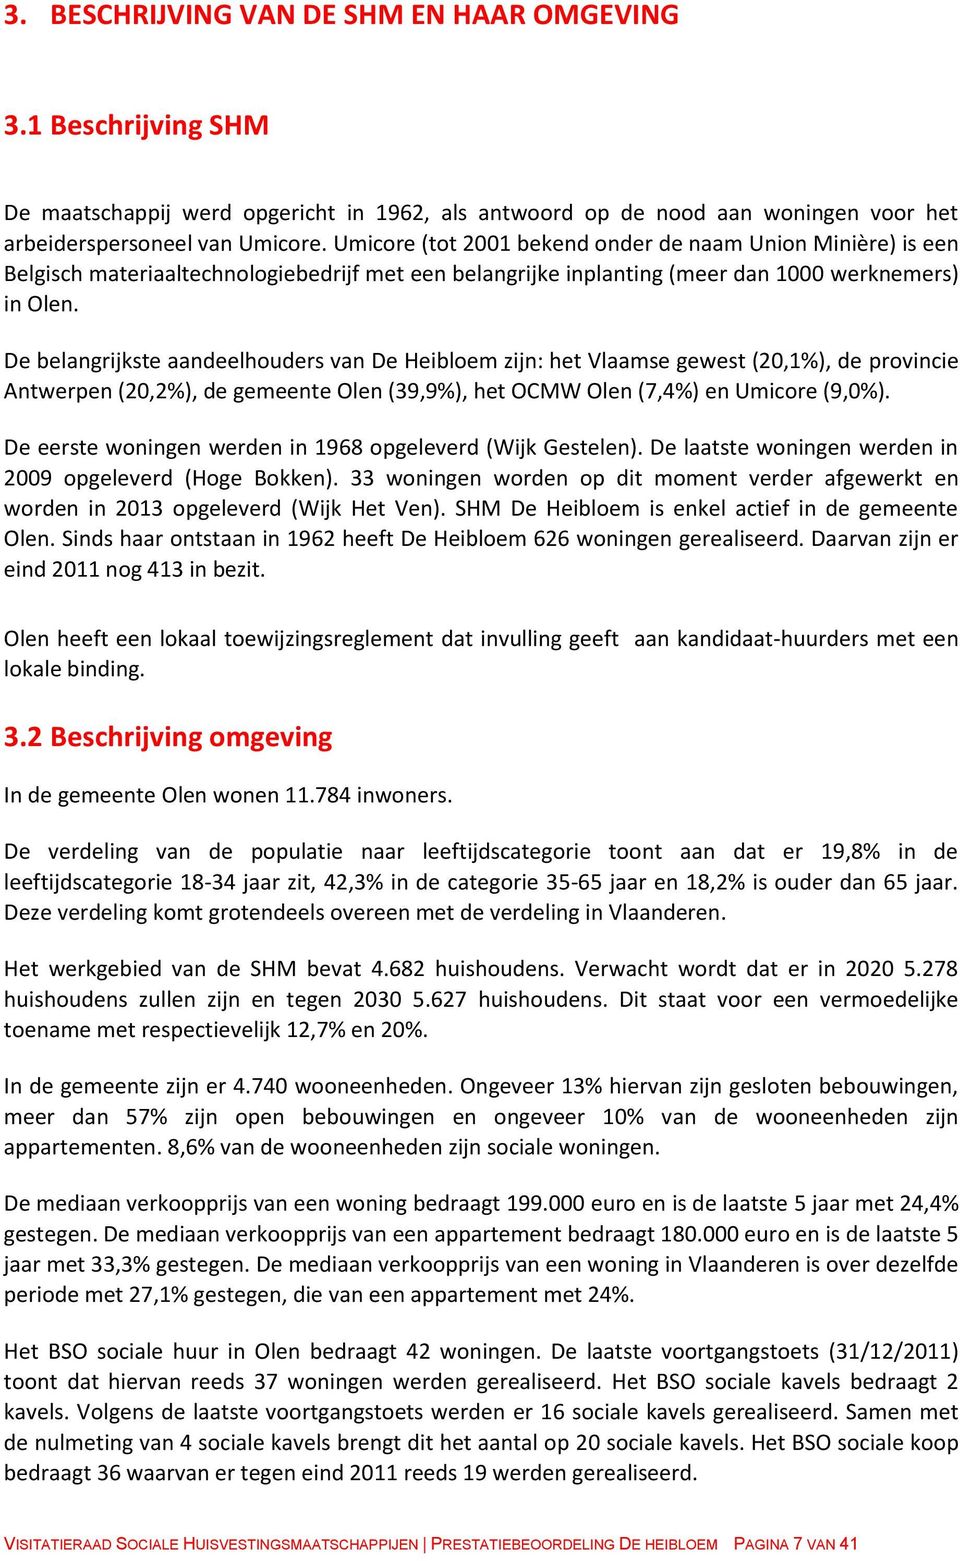 De belangrijkste aandeelhouders van De Heibloem zijn: het Vlaamse gewest (20,1%), de provincie Antwerpen (20,2%), de gemeente Olen (39,9%), het OCMW Olen (7,4%) en Umicore (9,0%).